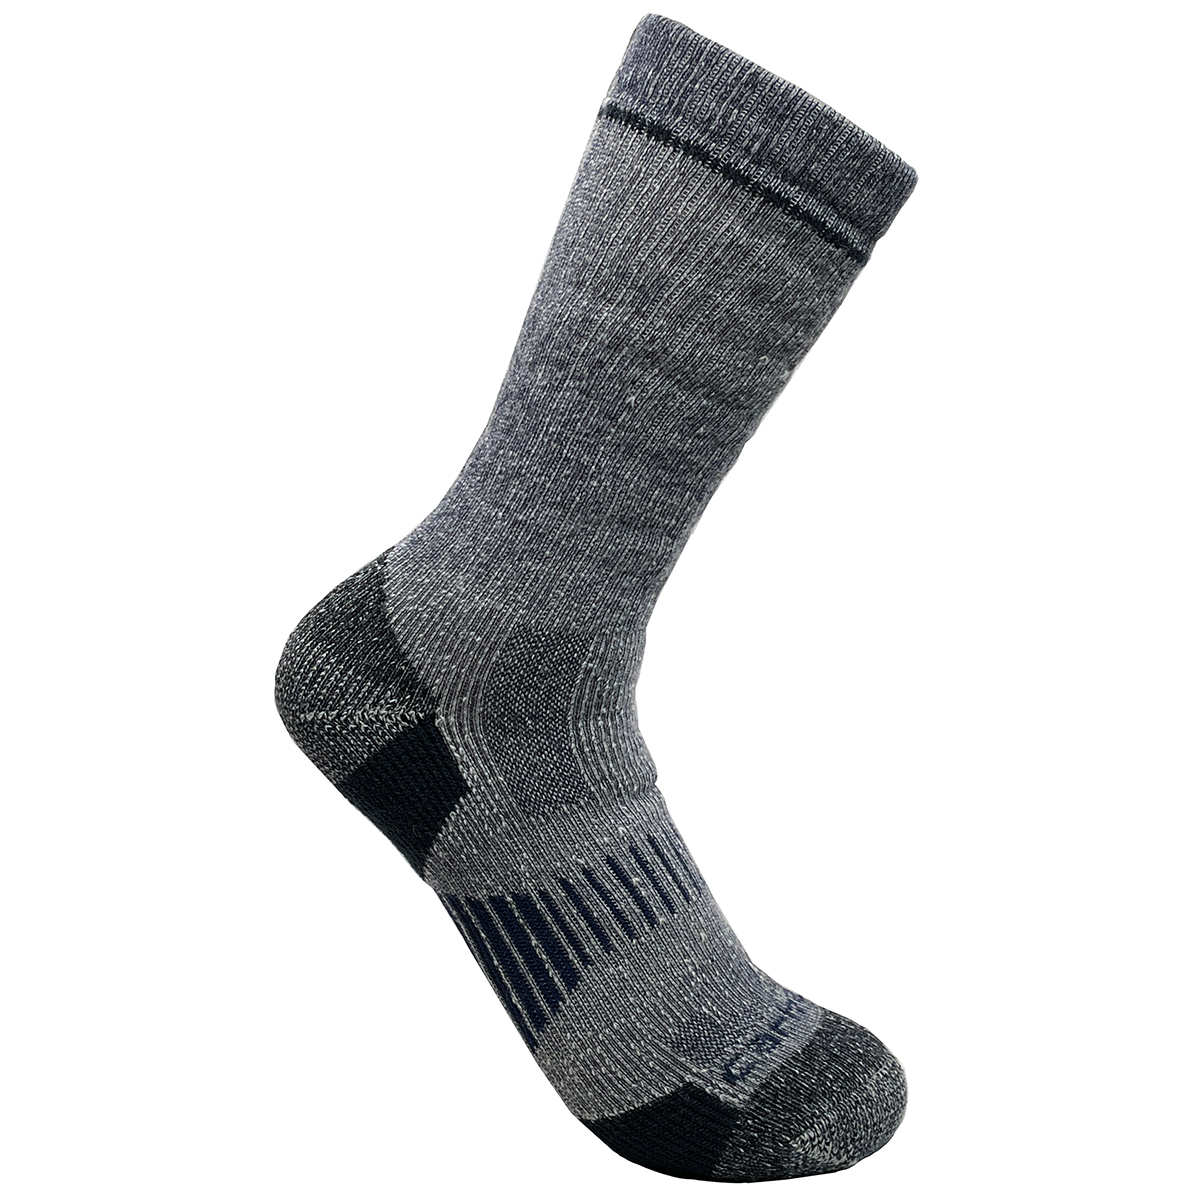 Carhartt Men's Wool Blend Crew Socks, 2 Pack